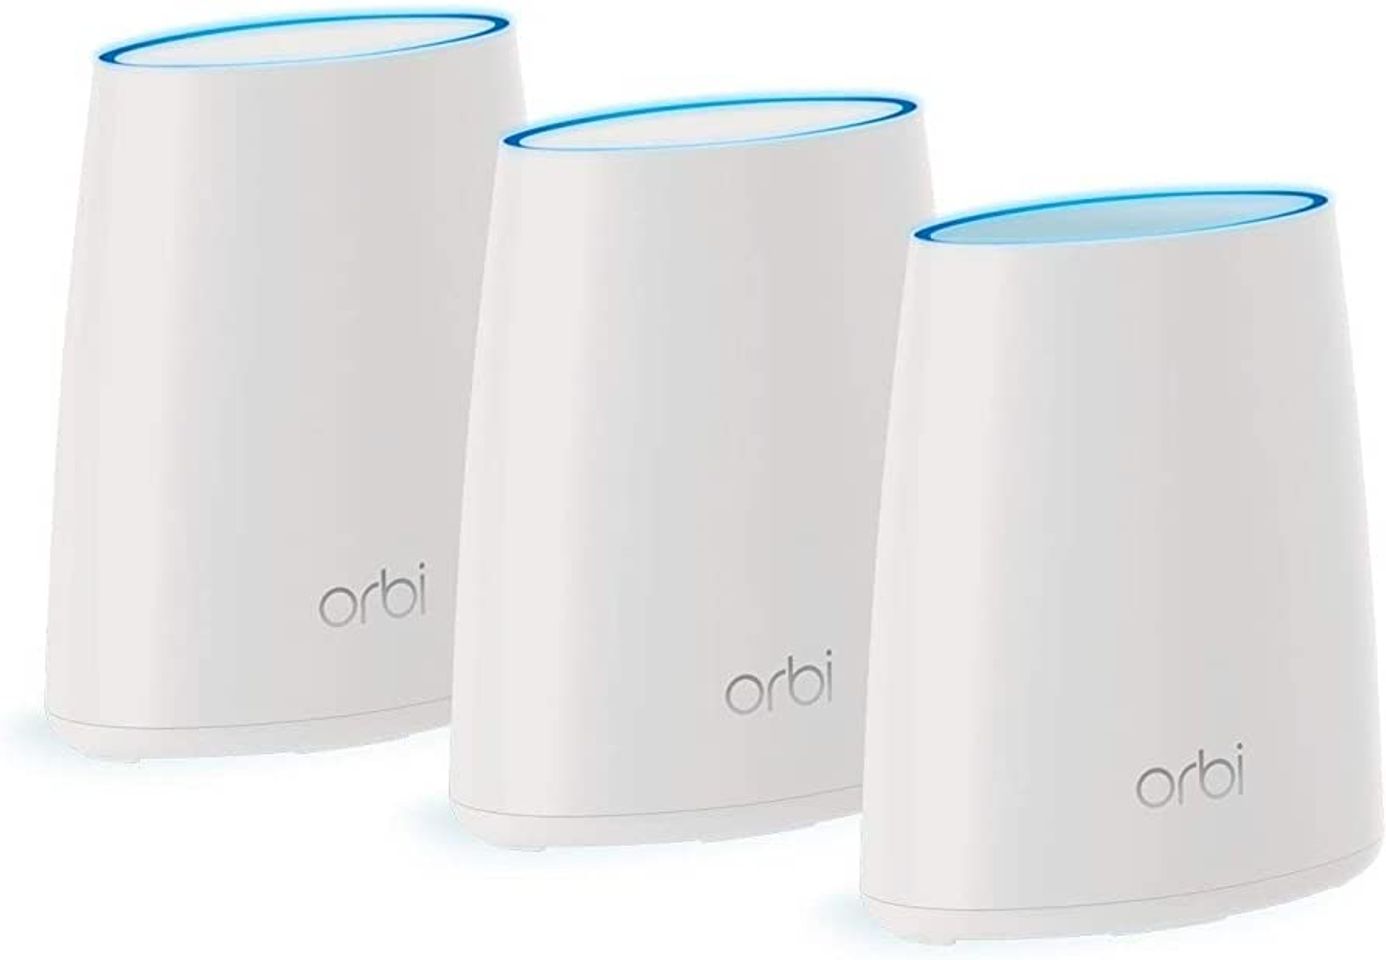 Netgear Orbi Whole Home WiFi System